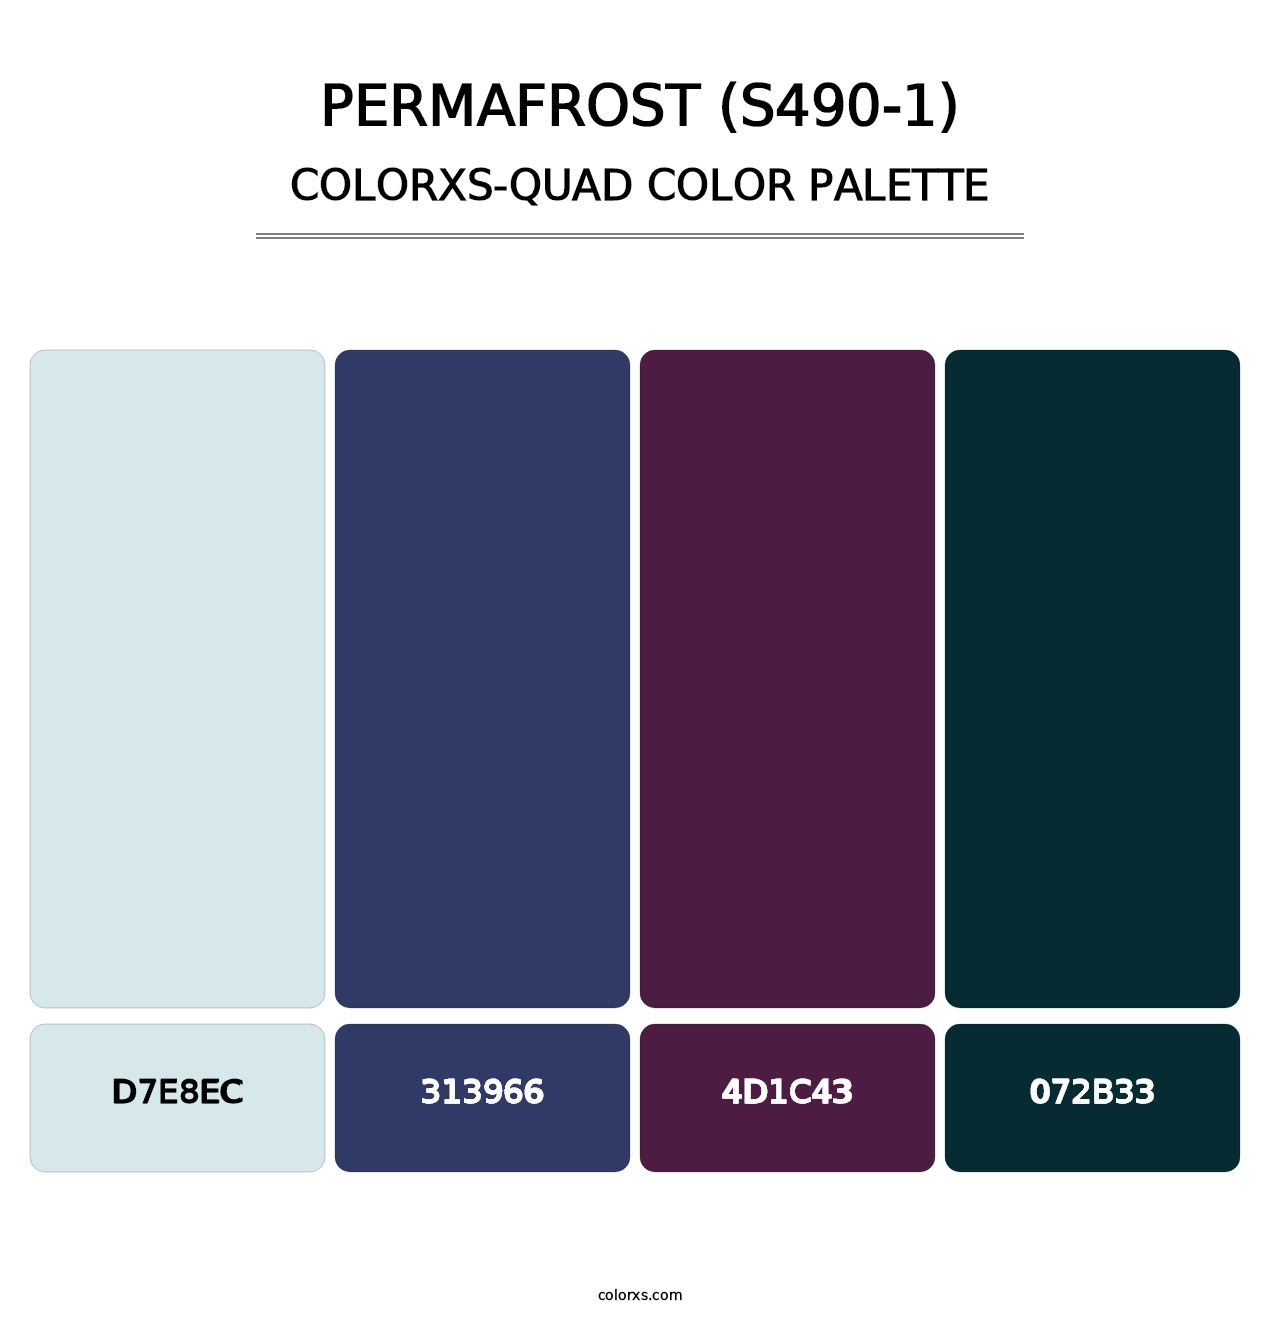 Permafrost (S490-1) - Colorxs Quad Palette